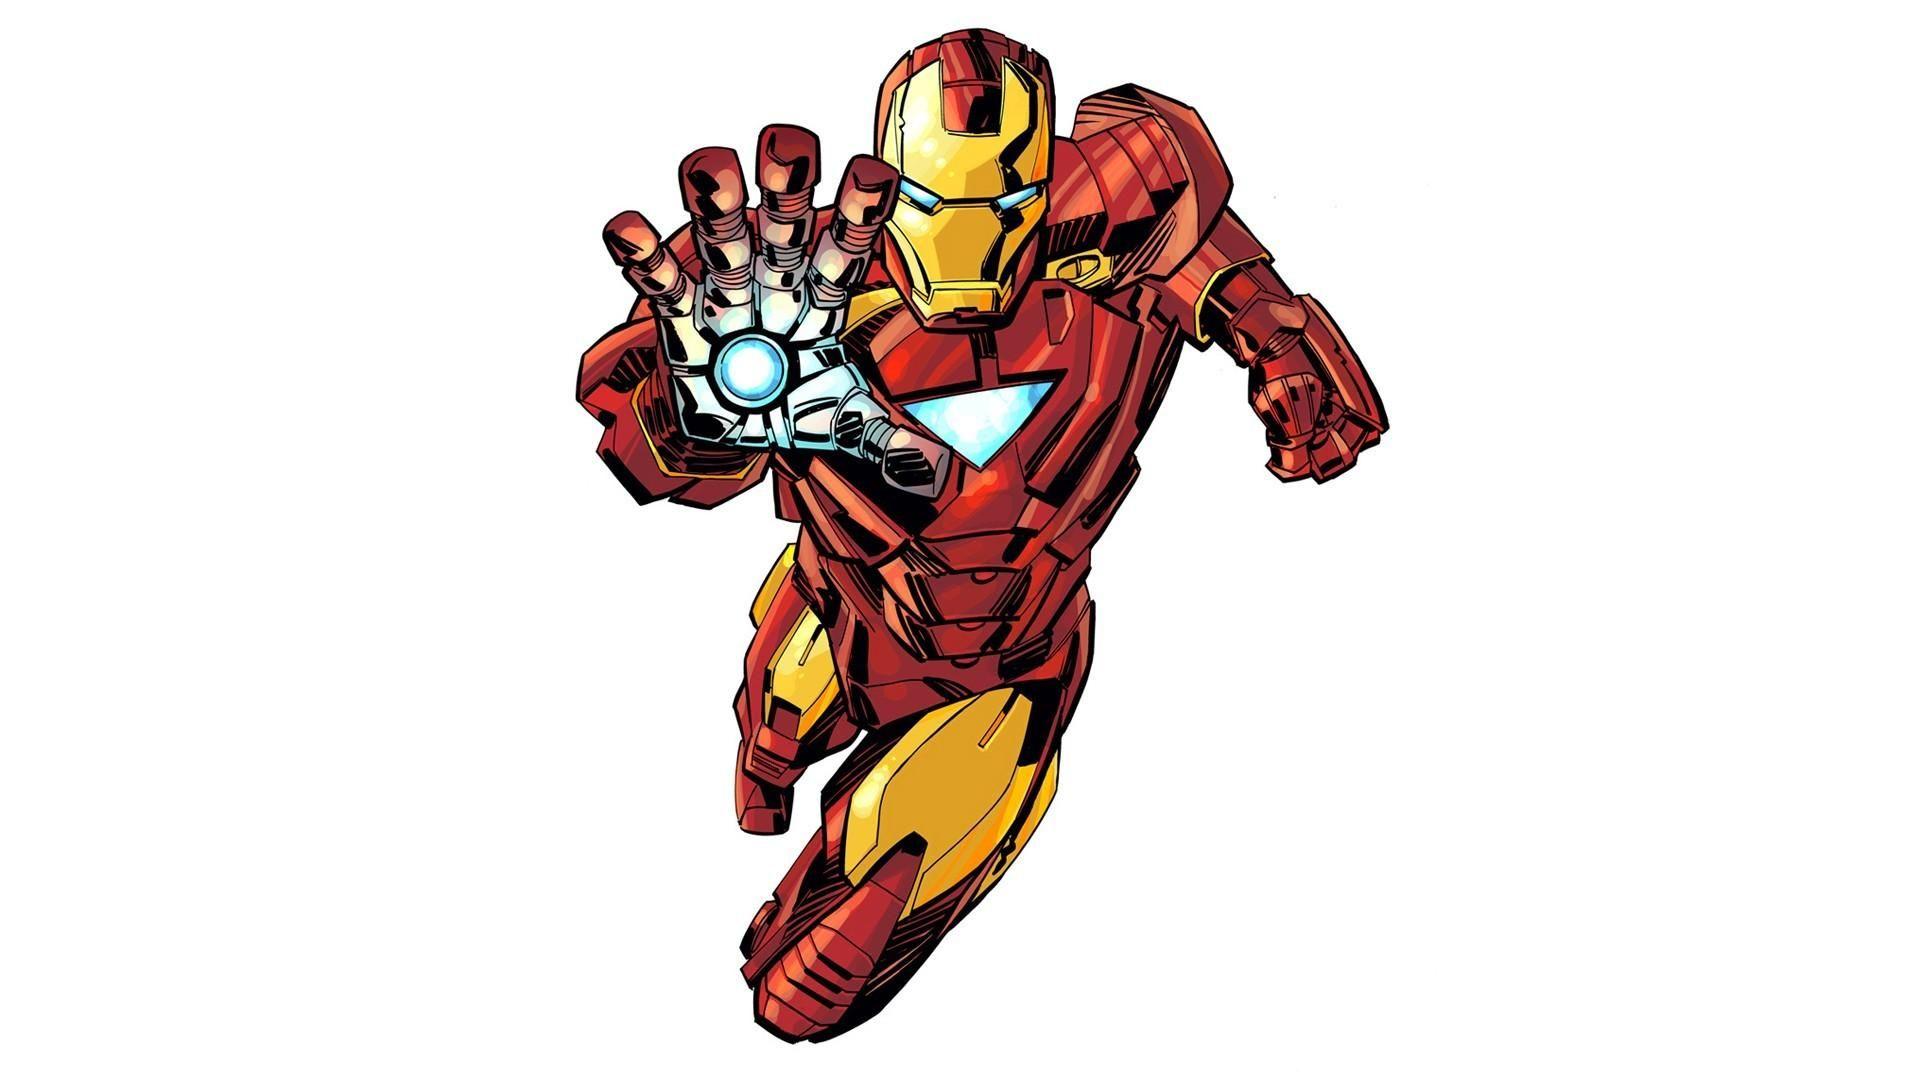 Iron man comics wallpapers